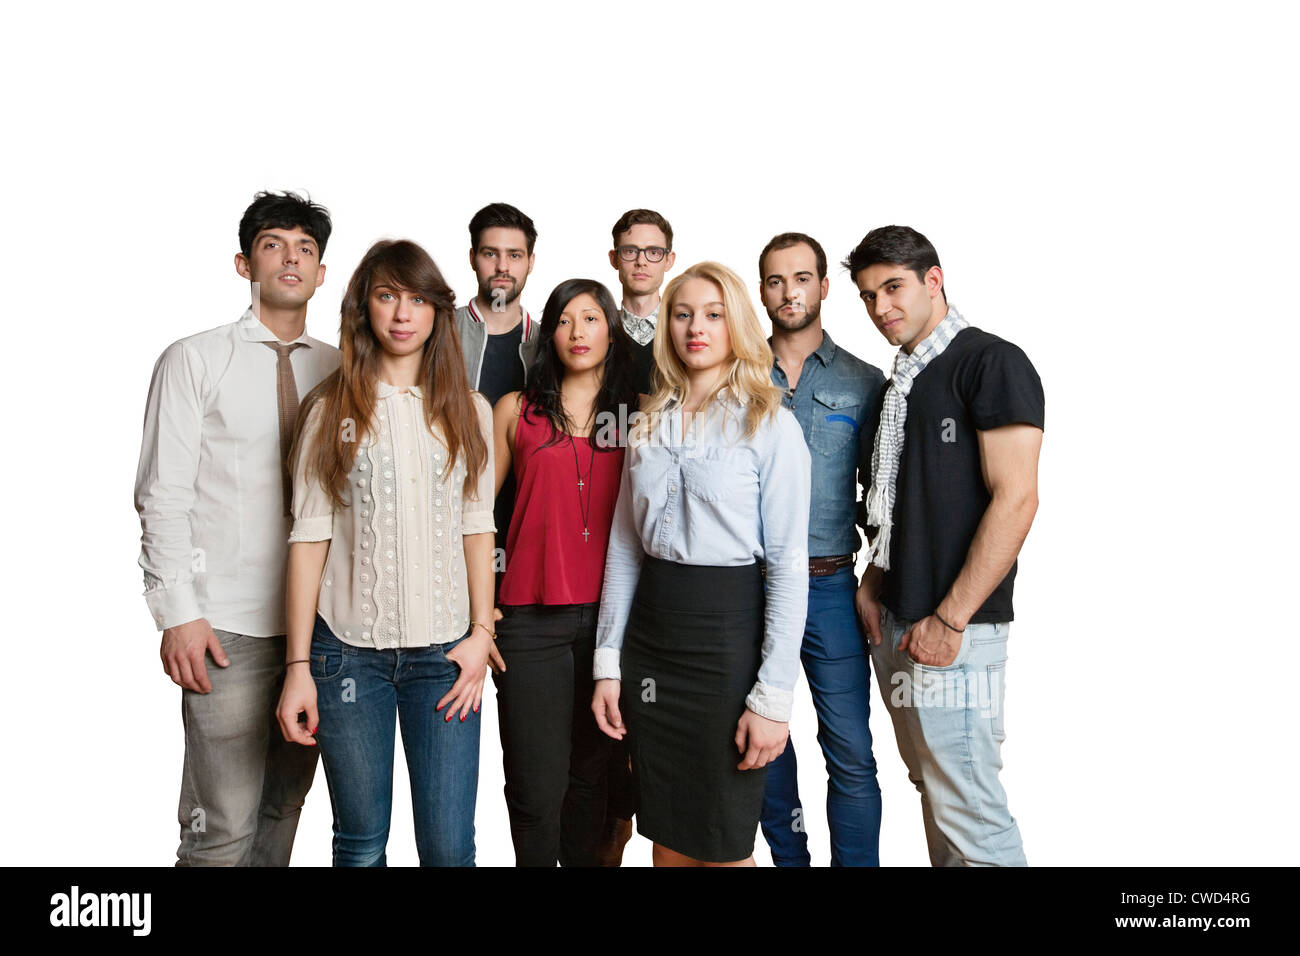 Porträt von multiethnische Gruppe von Freunden, die zusammen über farbigen Hintergrund stehen Stockfoto